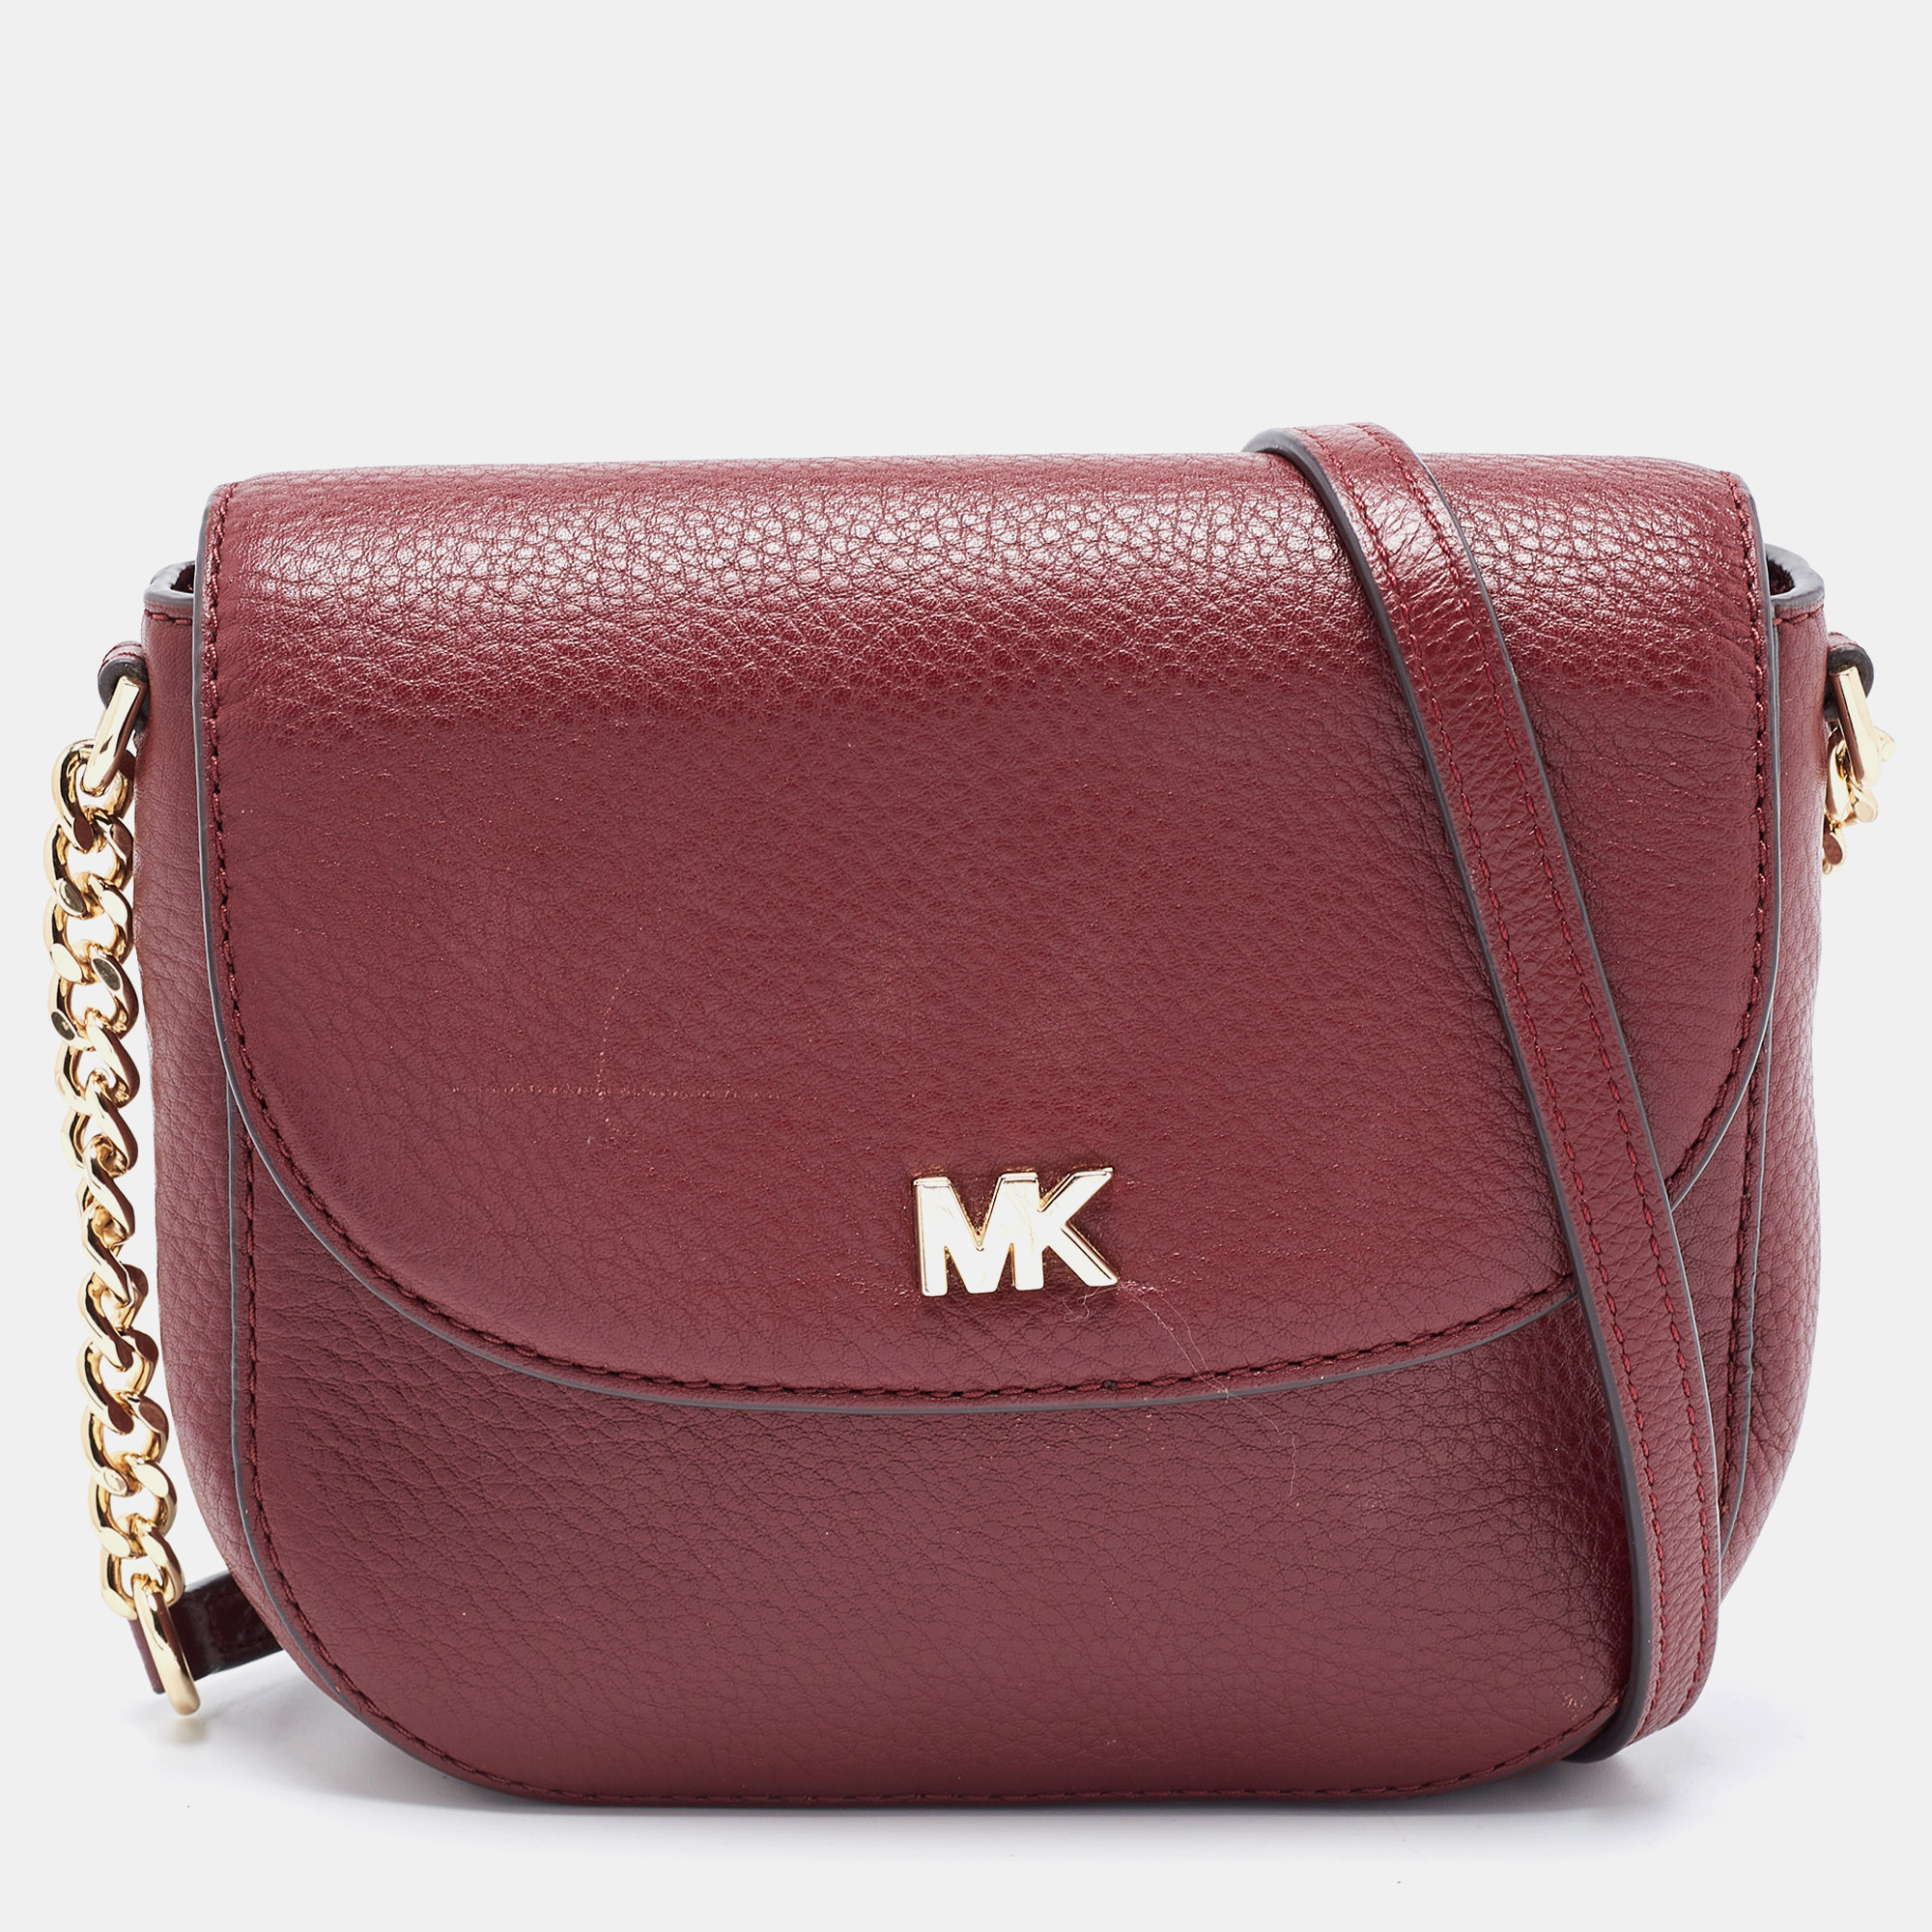 Michael kors burgundy leather mott crossbody bag